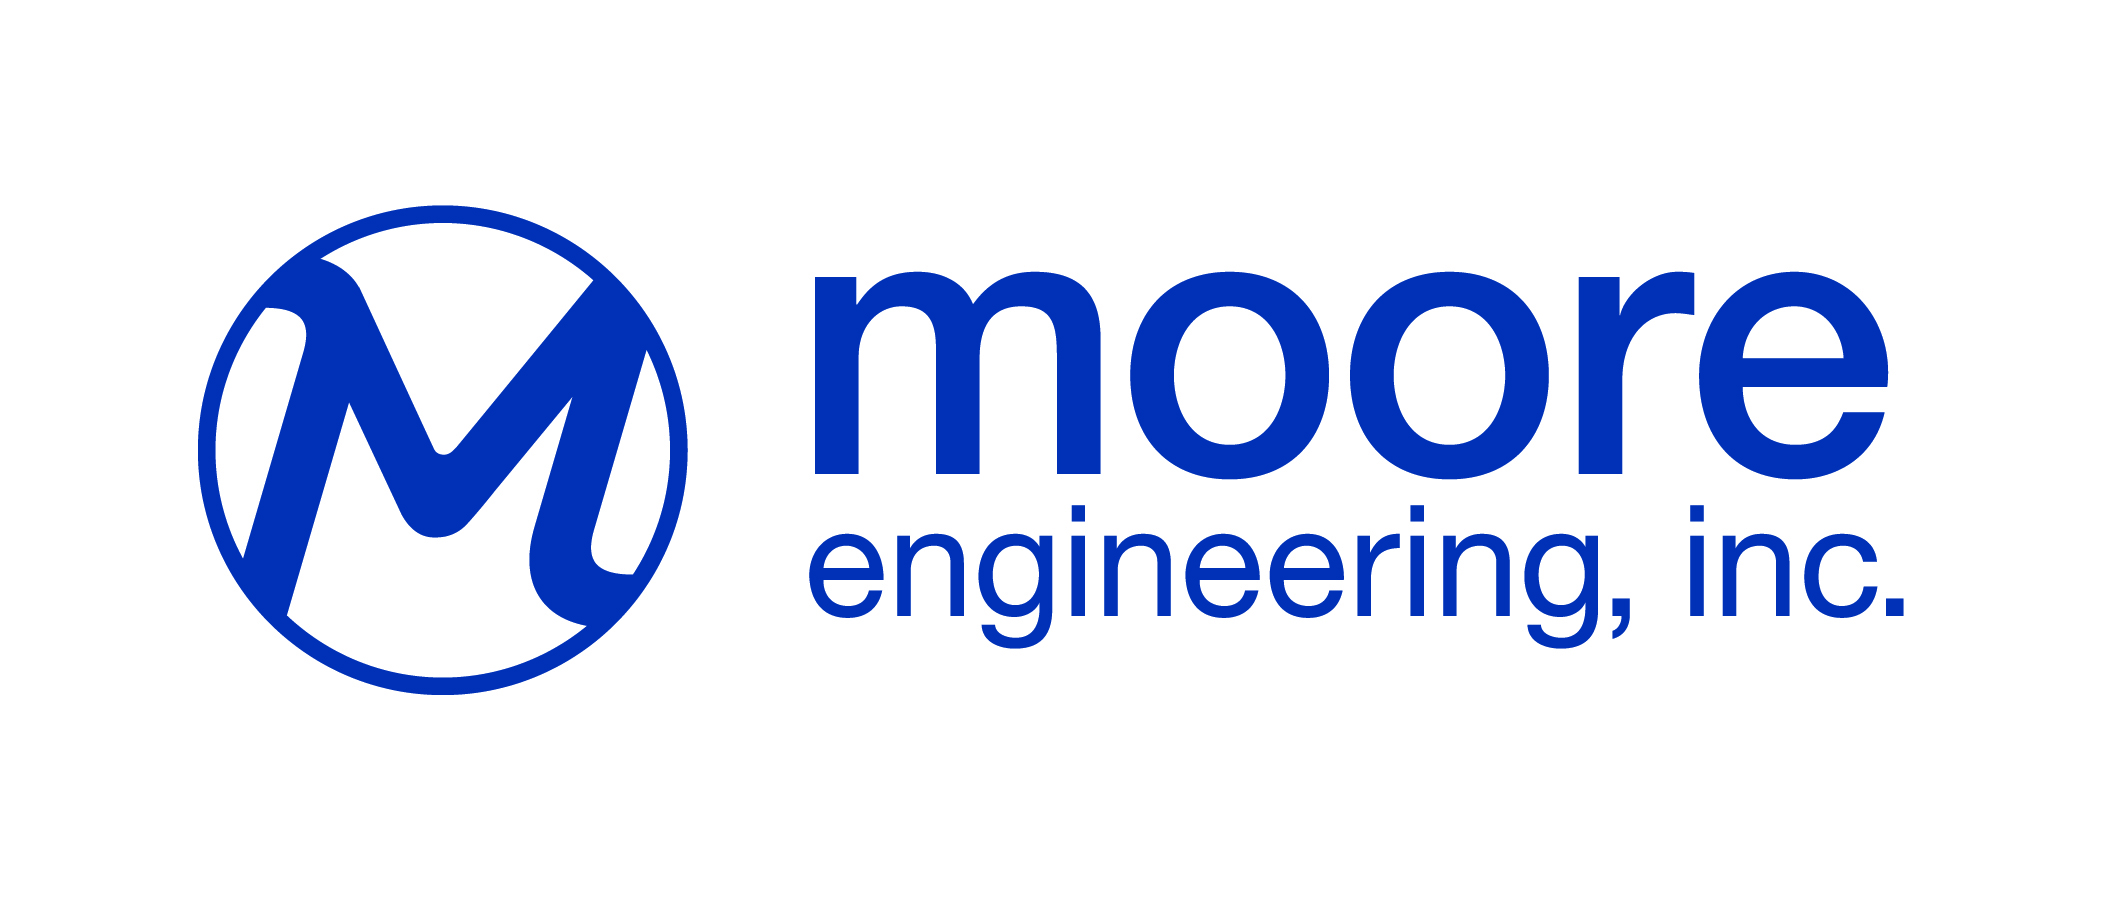 Moore Engineering